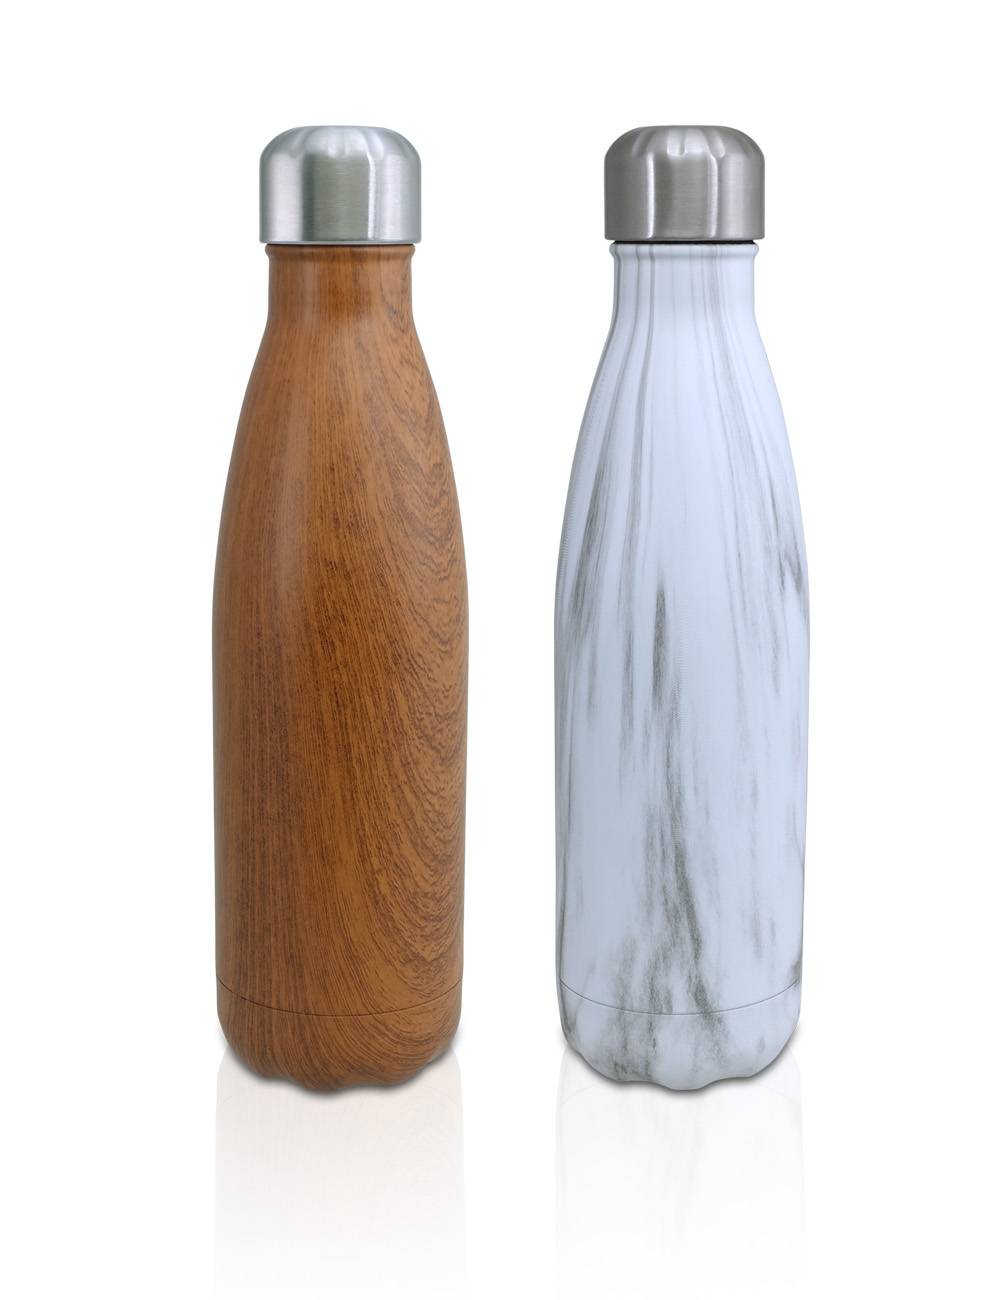 בקבוק טרמוס נירוסטה בעל דופן כפול לשמירה על חום וקור לזמן ממושך.
נפח: 500 מ”ל.